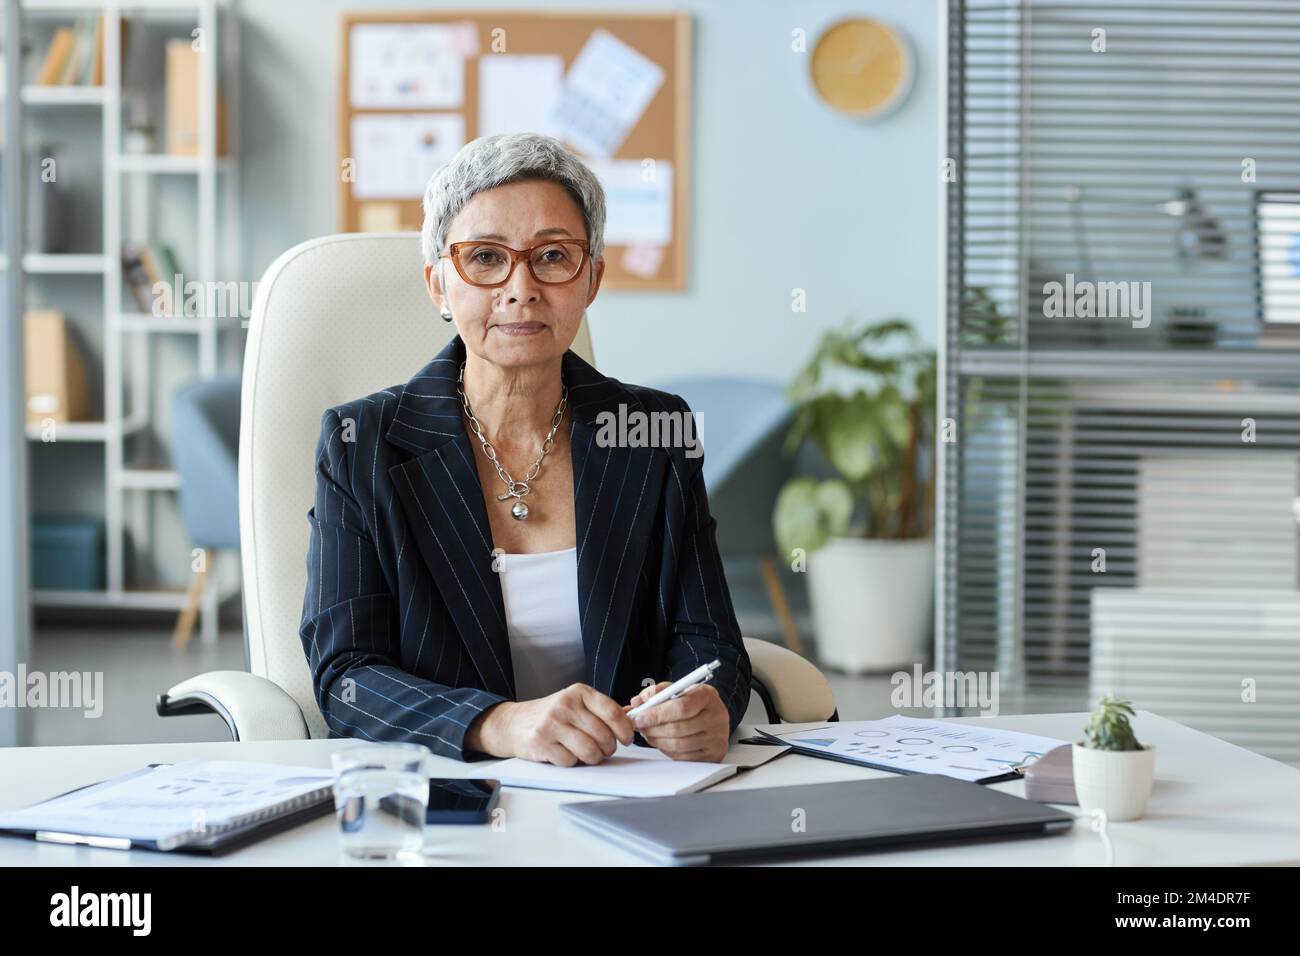 Portrait d'une femme âgée en tant que patron féminin assis au bureau et regardant l'appareil photo, l'espace de copie Banque D'Images